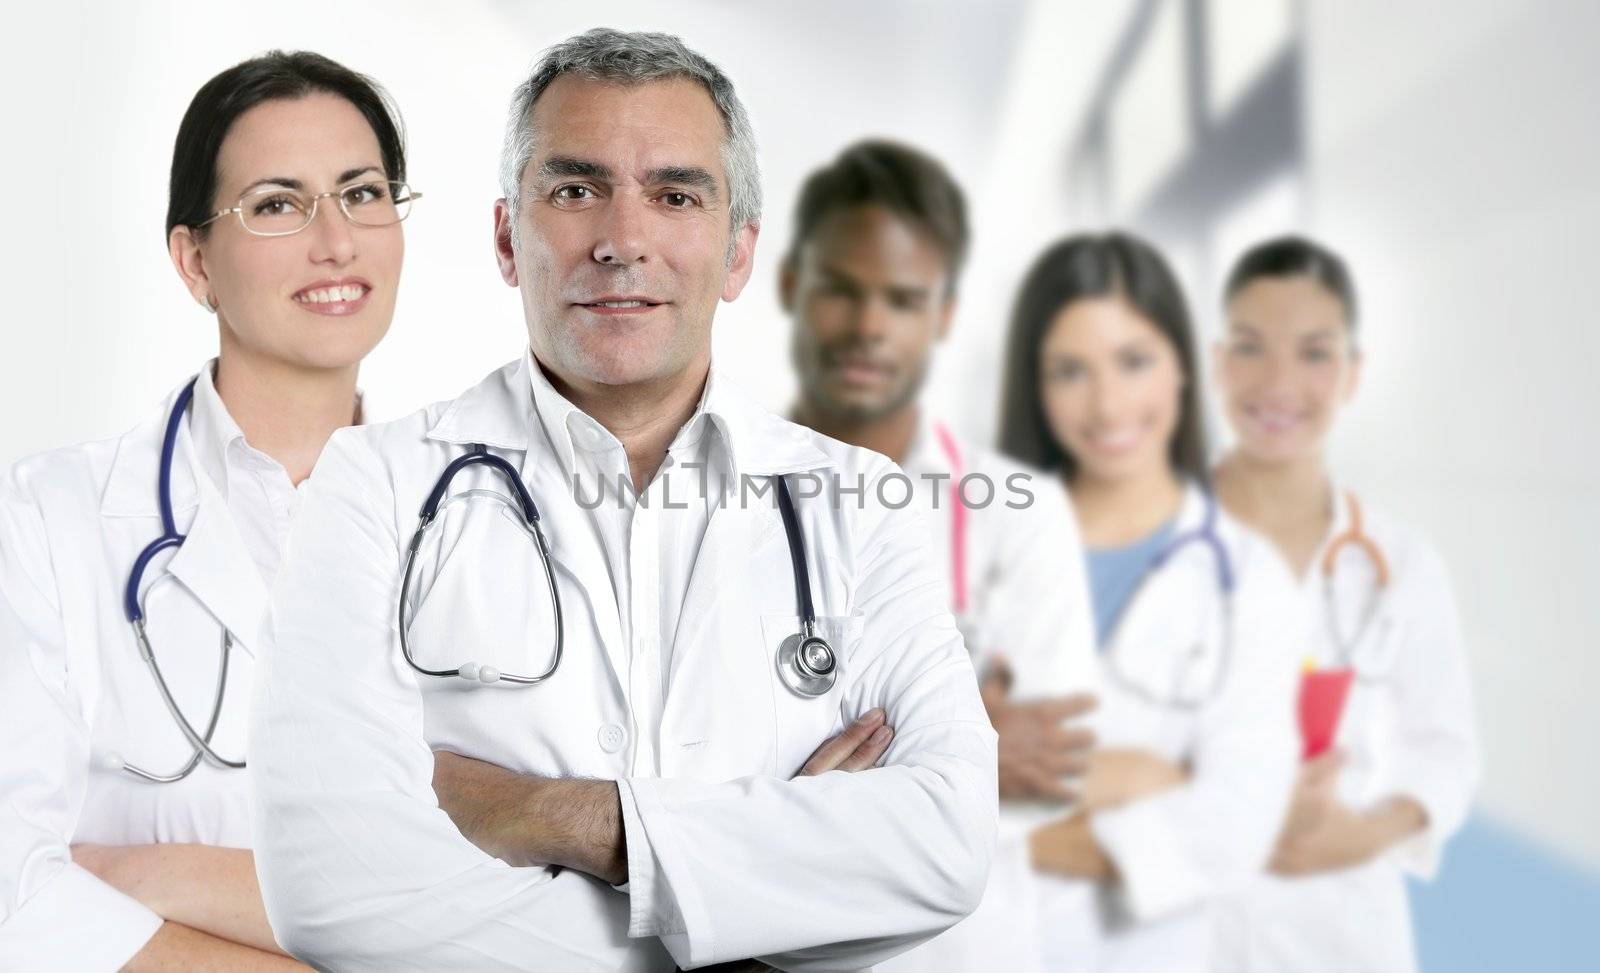 expertise gray hair doctor multiracial nurse team row over white